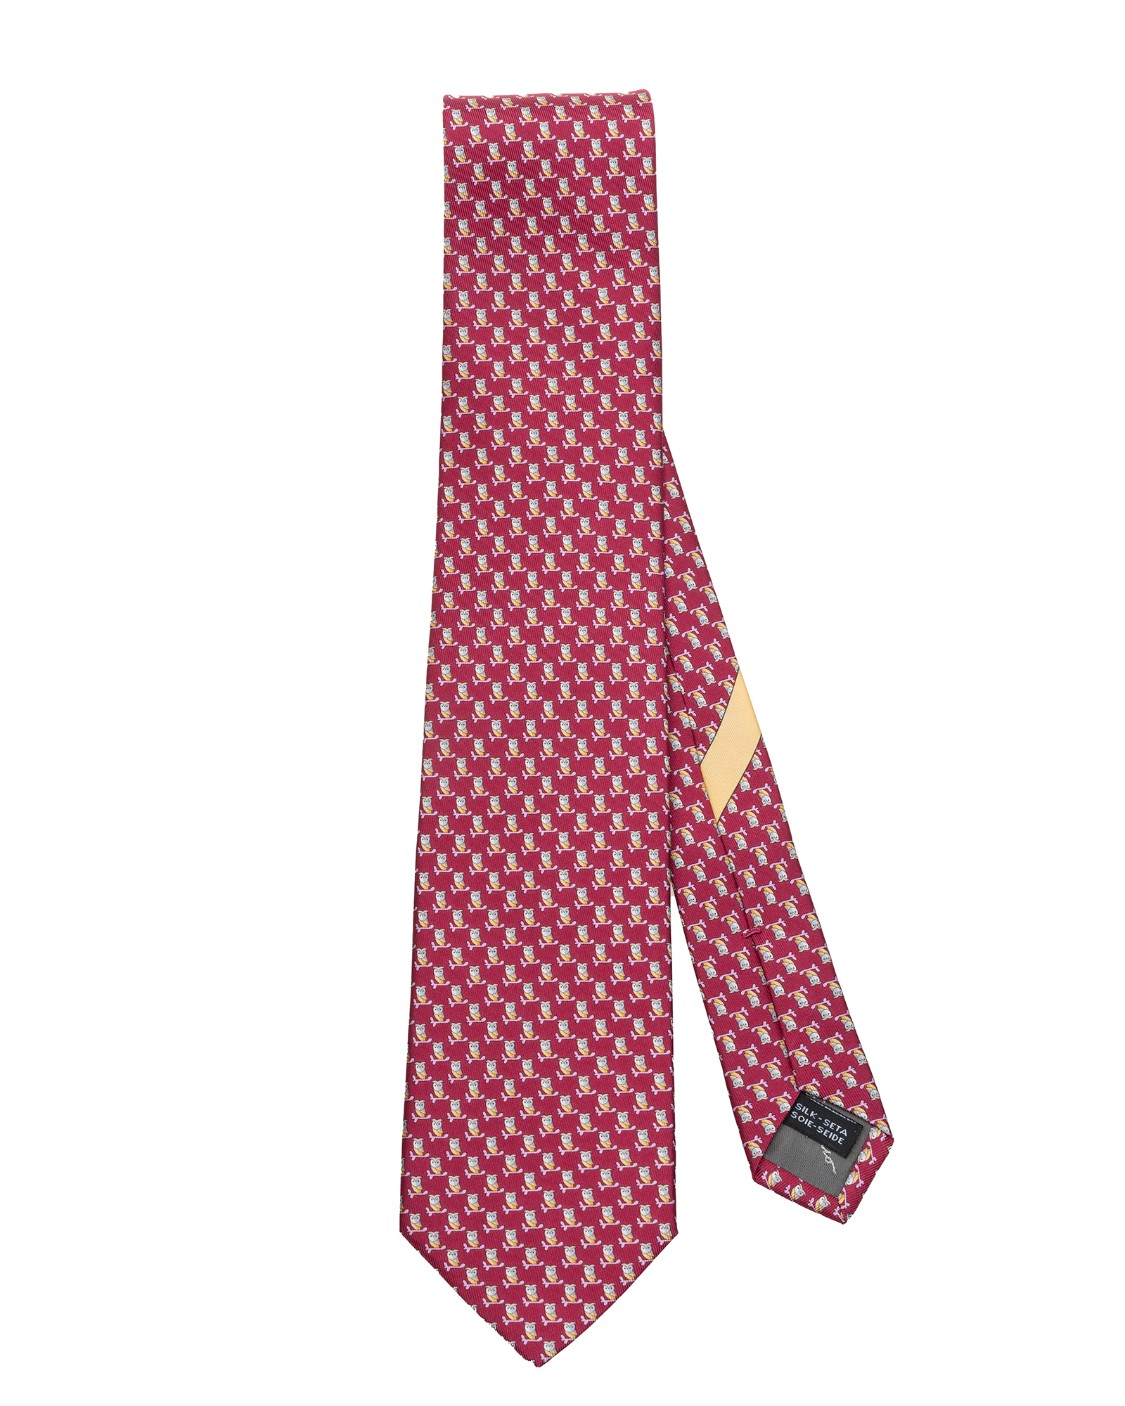 shop SALVATORE FERRAGAMO  Cravatta: Salvatore Ferragamo cravatta in seta stampa Gufi.
Cravatta in pura seta decorata con pattern di gufi stilizzati.
Composizione: 100% seta.
Made in Italy.. 357712 CR 4 FUFO-F number 1470750